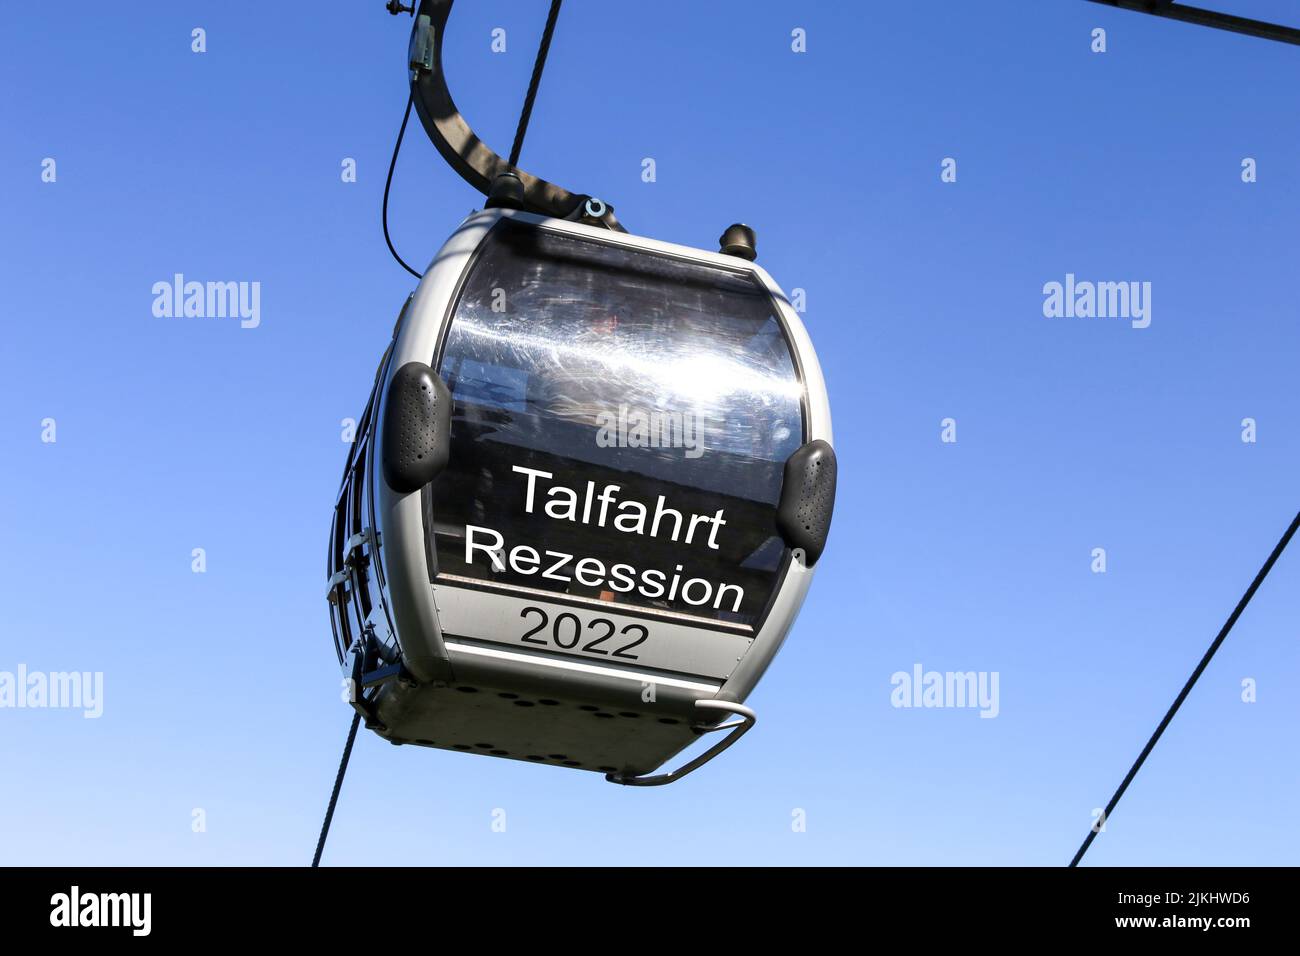 Symbolbild Rezession: Gondel mit der Aufschrift Talfahrt, Rezession vor blauem Himmel (Composing) Stock Photo